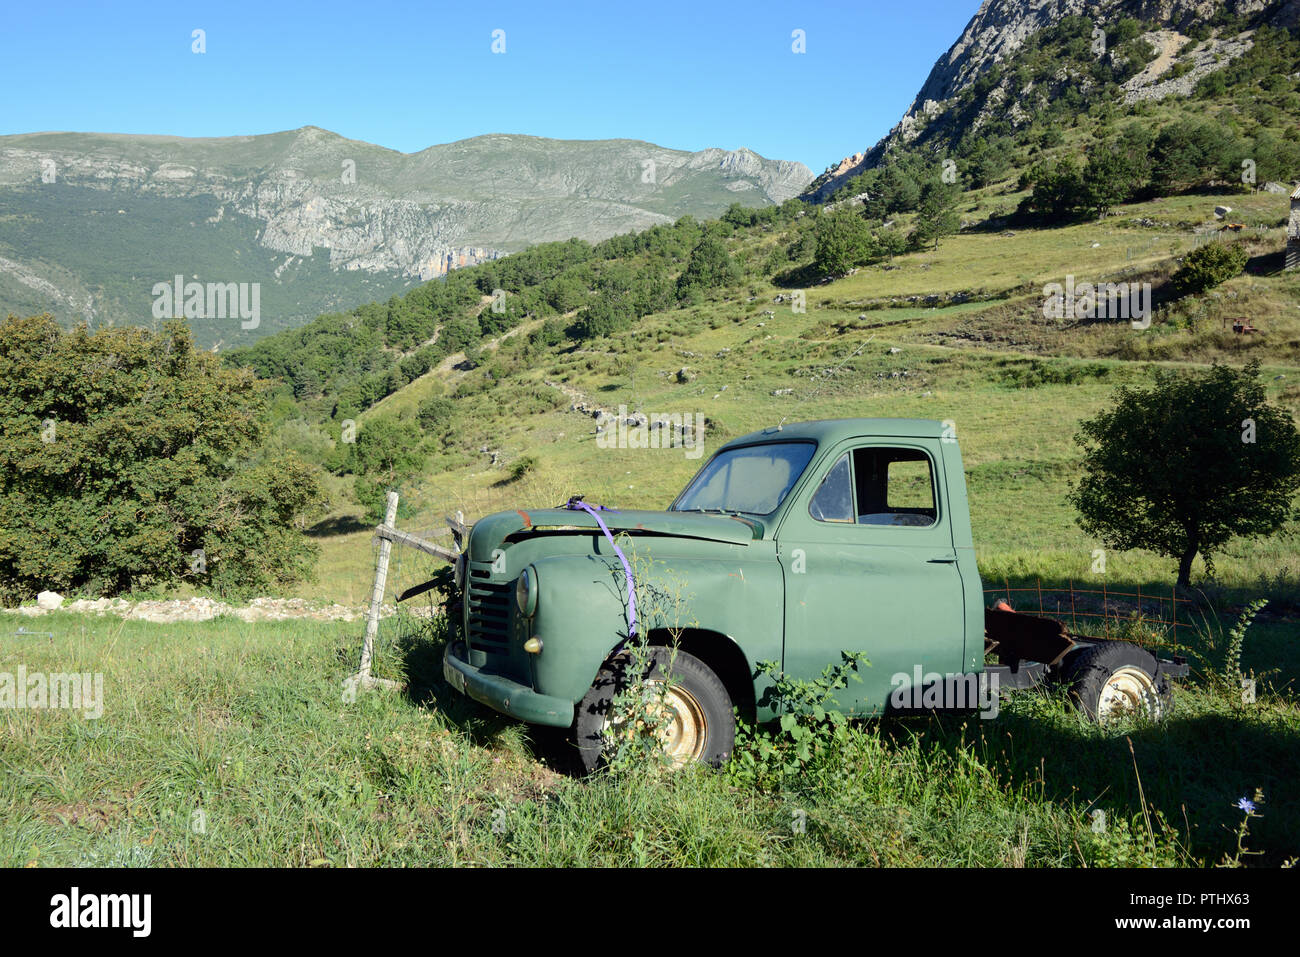 Abgebrochene Vintage Peugeot 203 up Truck (1948-1960) in der grünen Landschaft auf Hill Farm bei Taloire in der Verdon Schlucht Französische Alpen Frankreich Pick Stockfoto